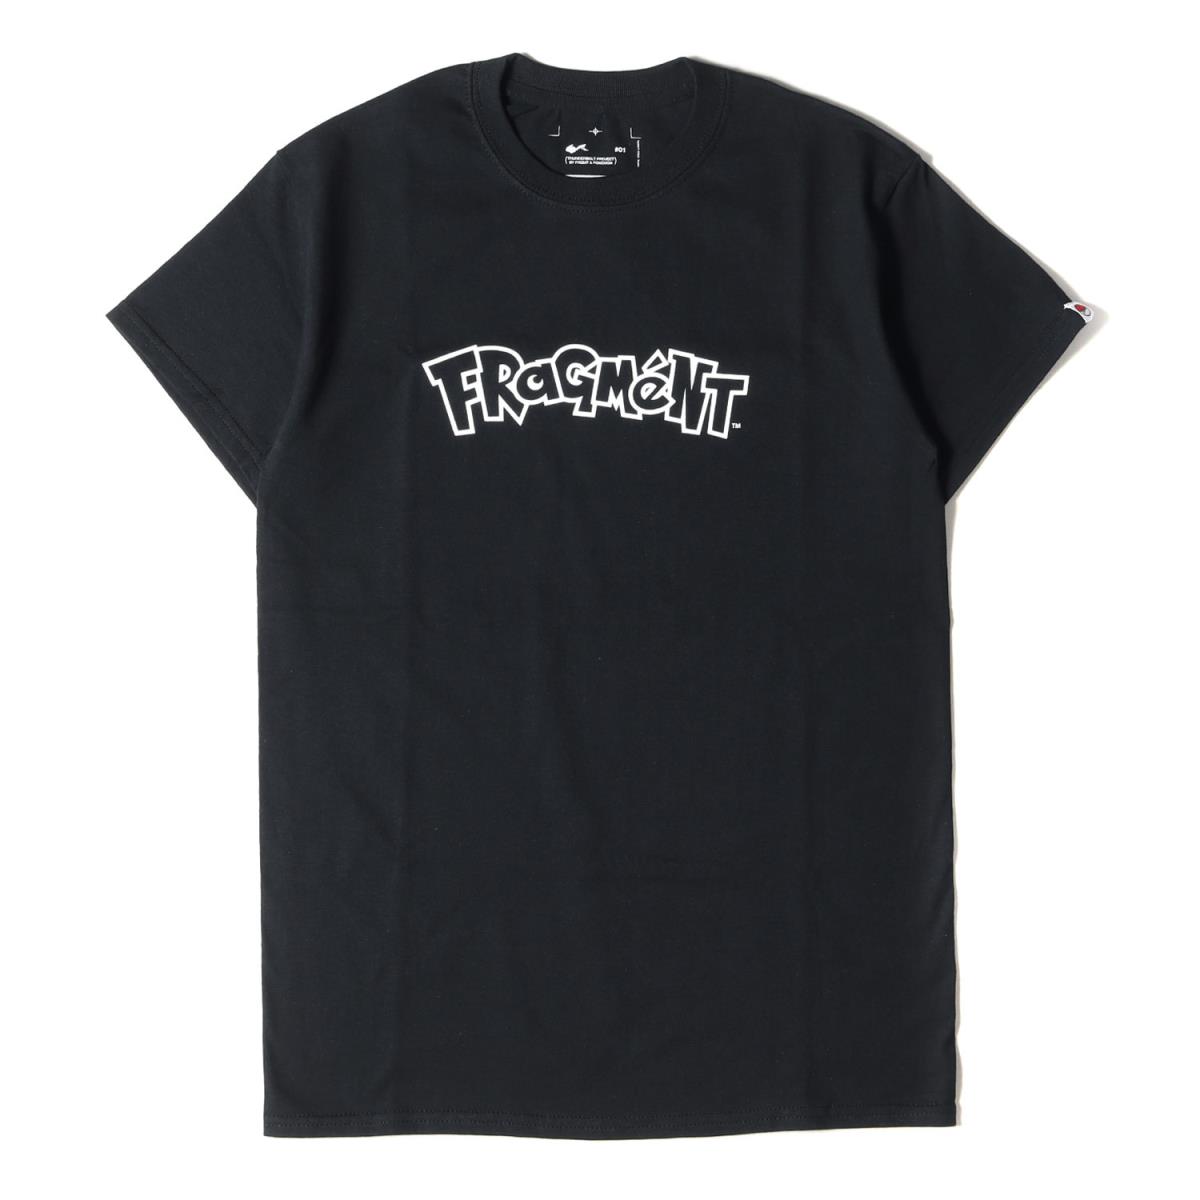 トップス, Tシャツ・カットソー fragment T THUNDERBOLT PROJECT T 18AW S K3499